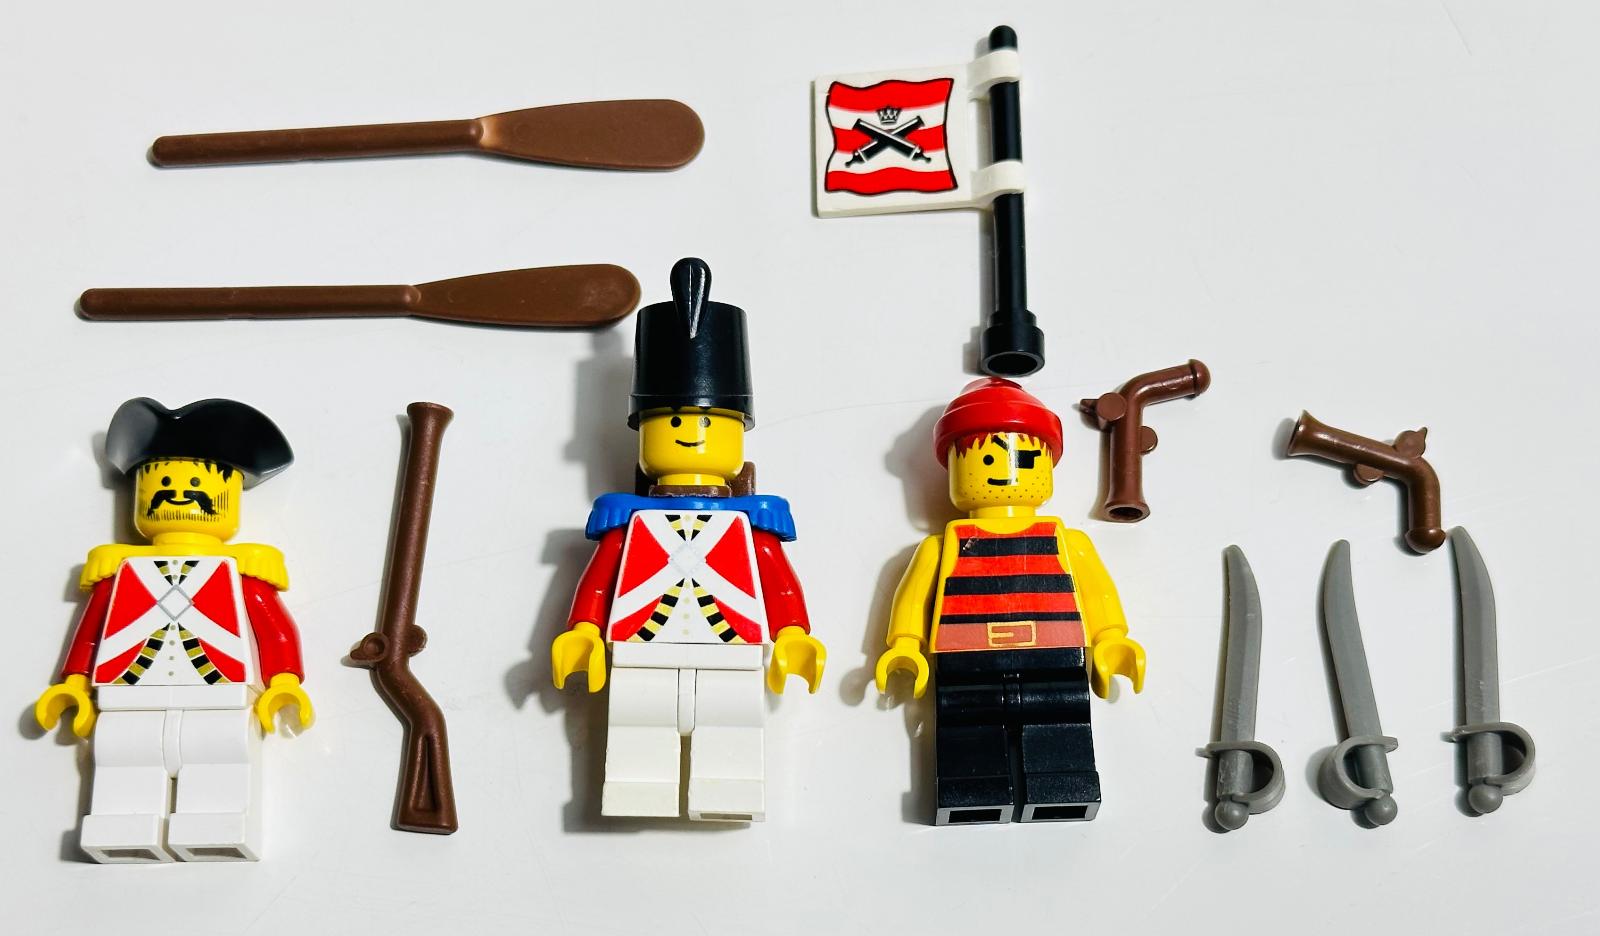 LEGO Pirates Piráti Imperial Guards 6266 Cannon Cove z roku 1993 - Hračky